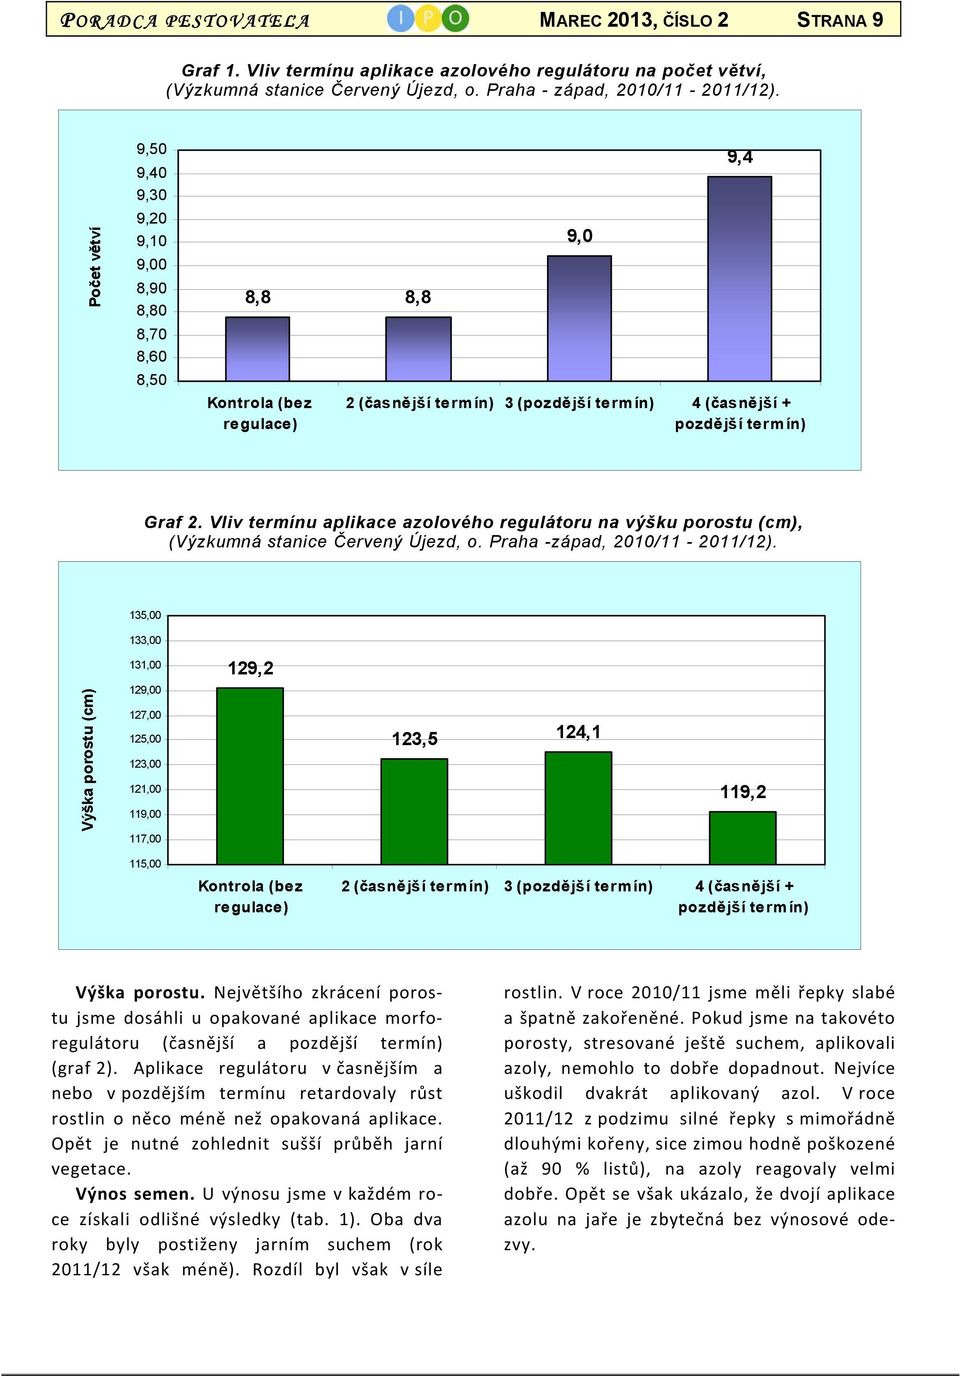 Vliv termínu aplikace azolového regulátoru na výšku porostu (cm), (Výzkumná stanice Červený Újezd, o. Praha -západ, 2010/11-2011/12).